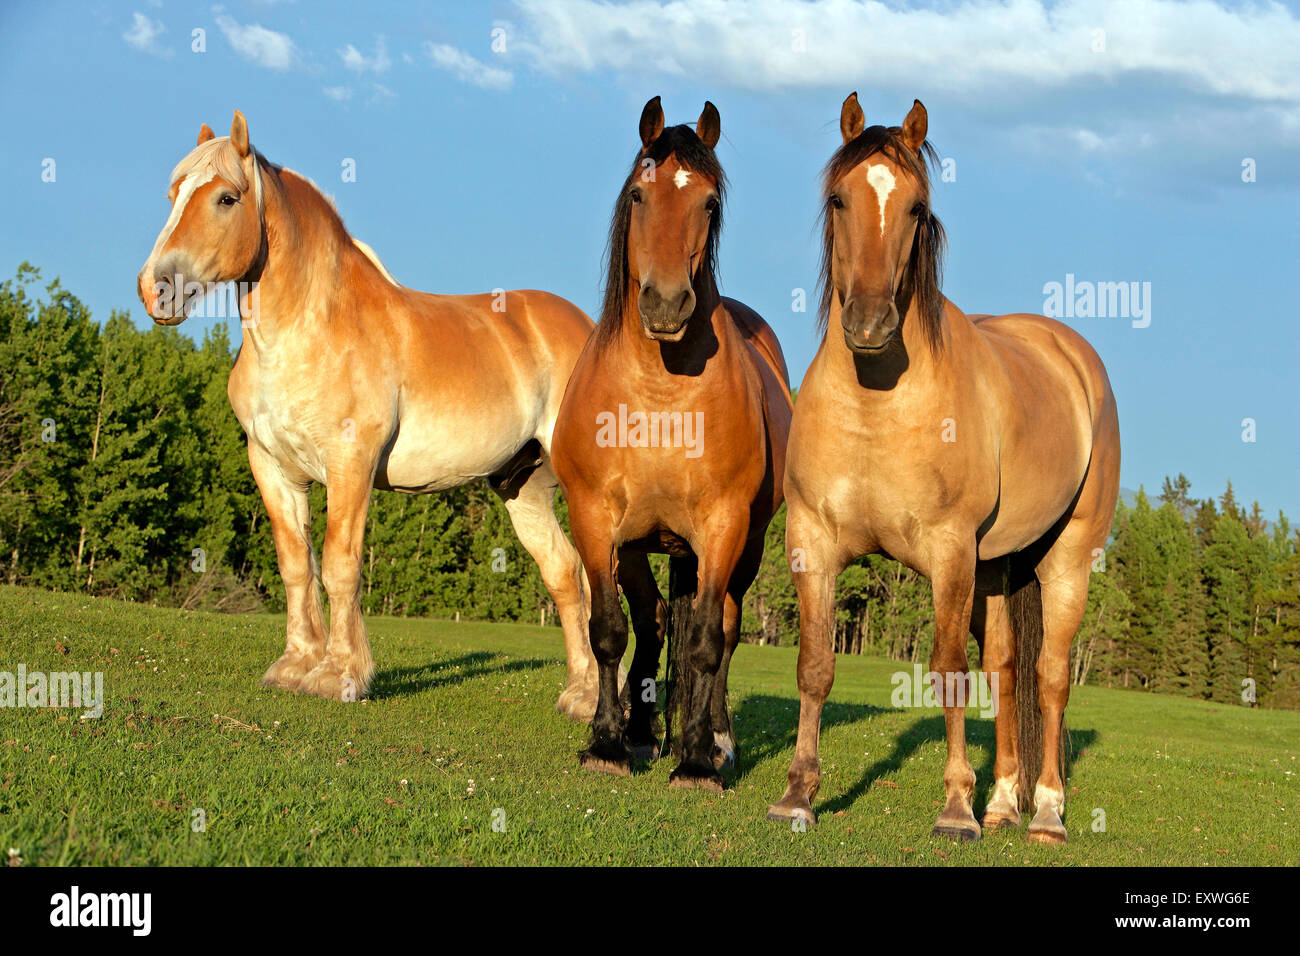 Belgique chevaux de debout ensemble dans un pré, la lumière du soleil du soir Banque D'Images